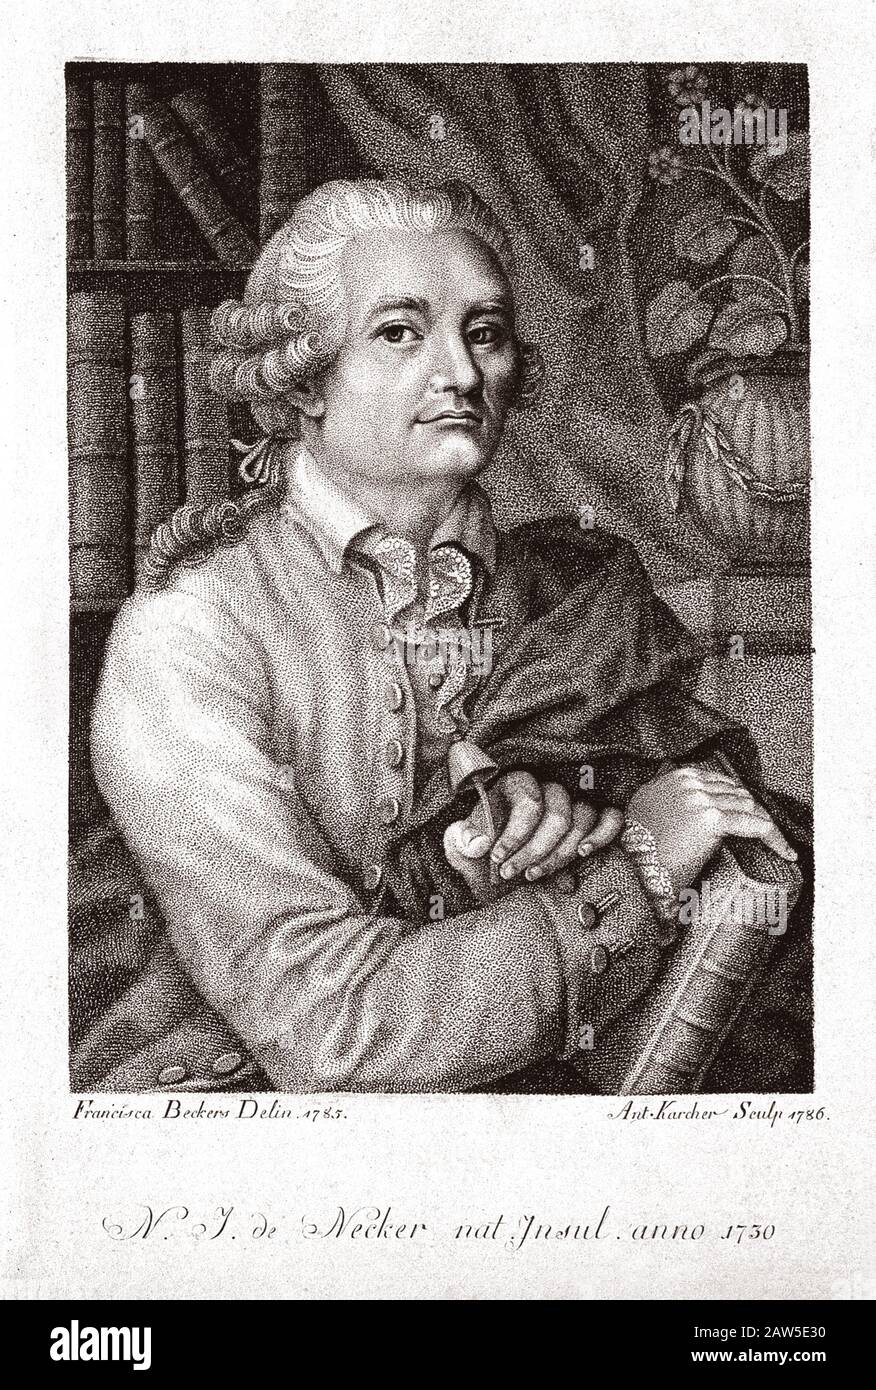 Der belgische Arzt und Botaniker NOEL MARTIN Joseph DE NECKER ( Natalis-Josephus de Necker , 1730 - 173 ) ist ein französischer Arzt und Botaniker. Stippelgravur B. Stockfoto